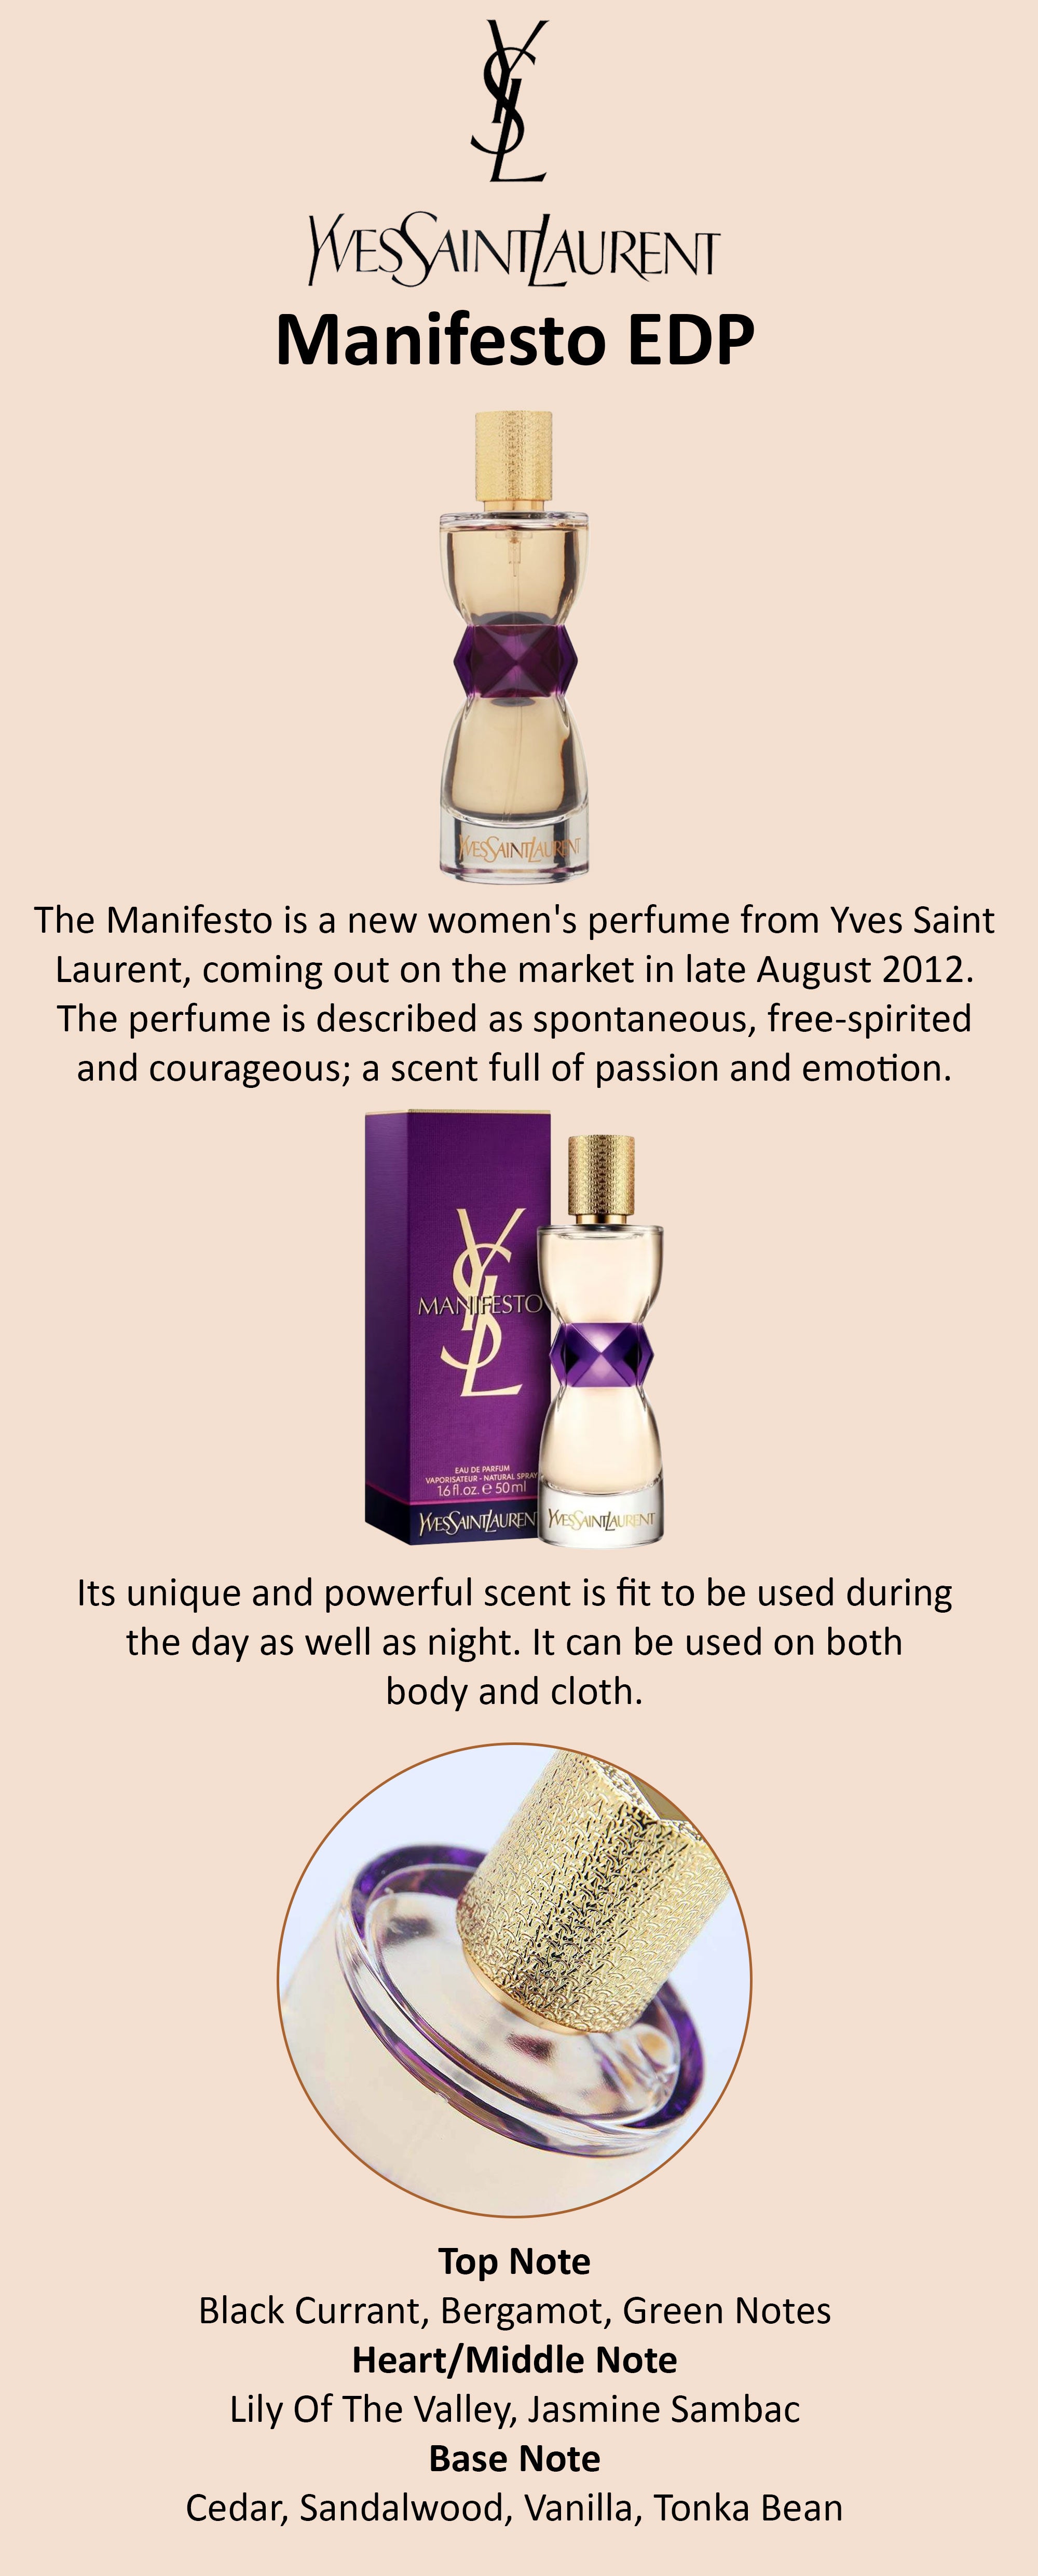 Manifesto Yves Saint Laurent perfume - a fragrance for women 2012